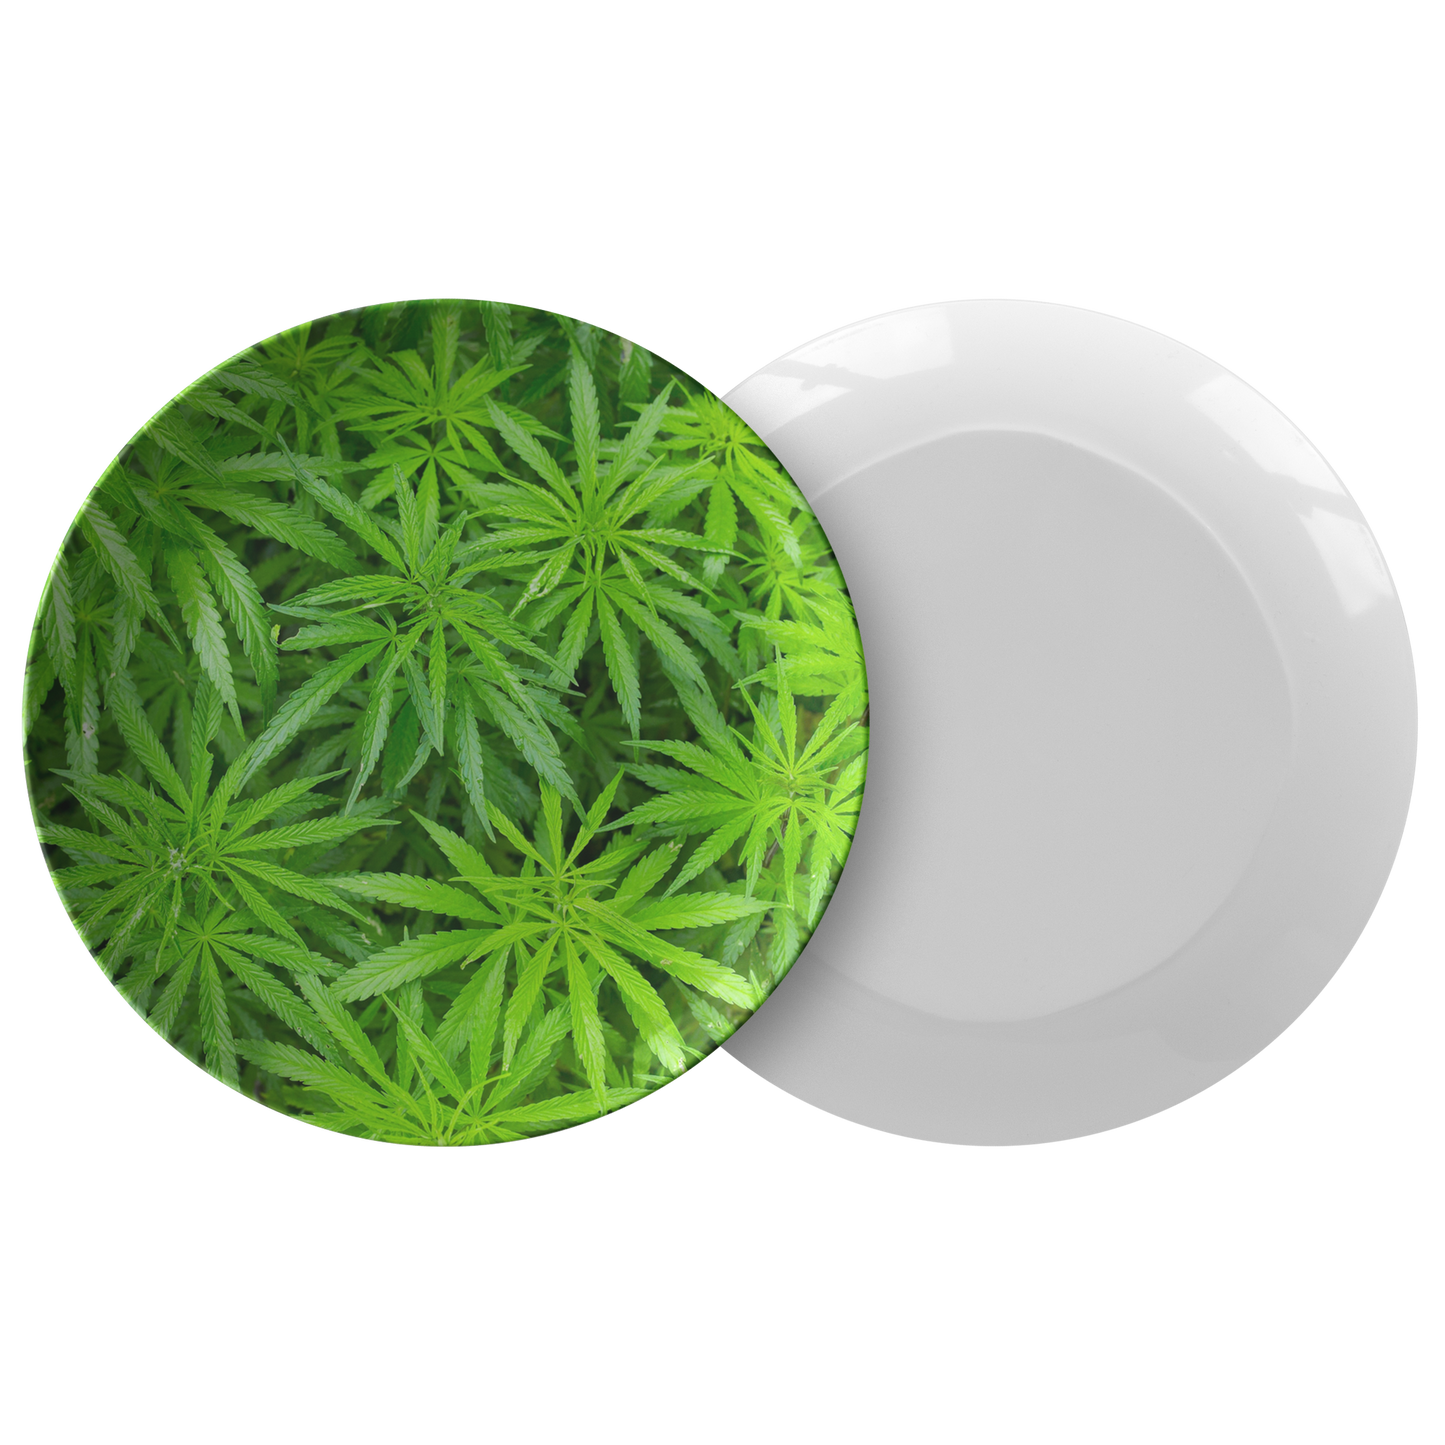 That Green Cannabis Plate